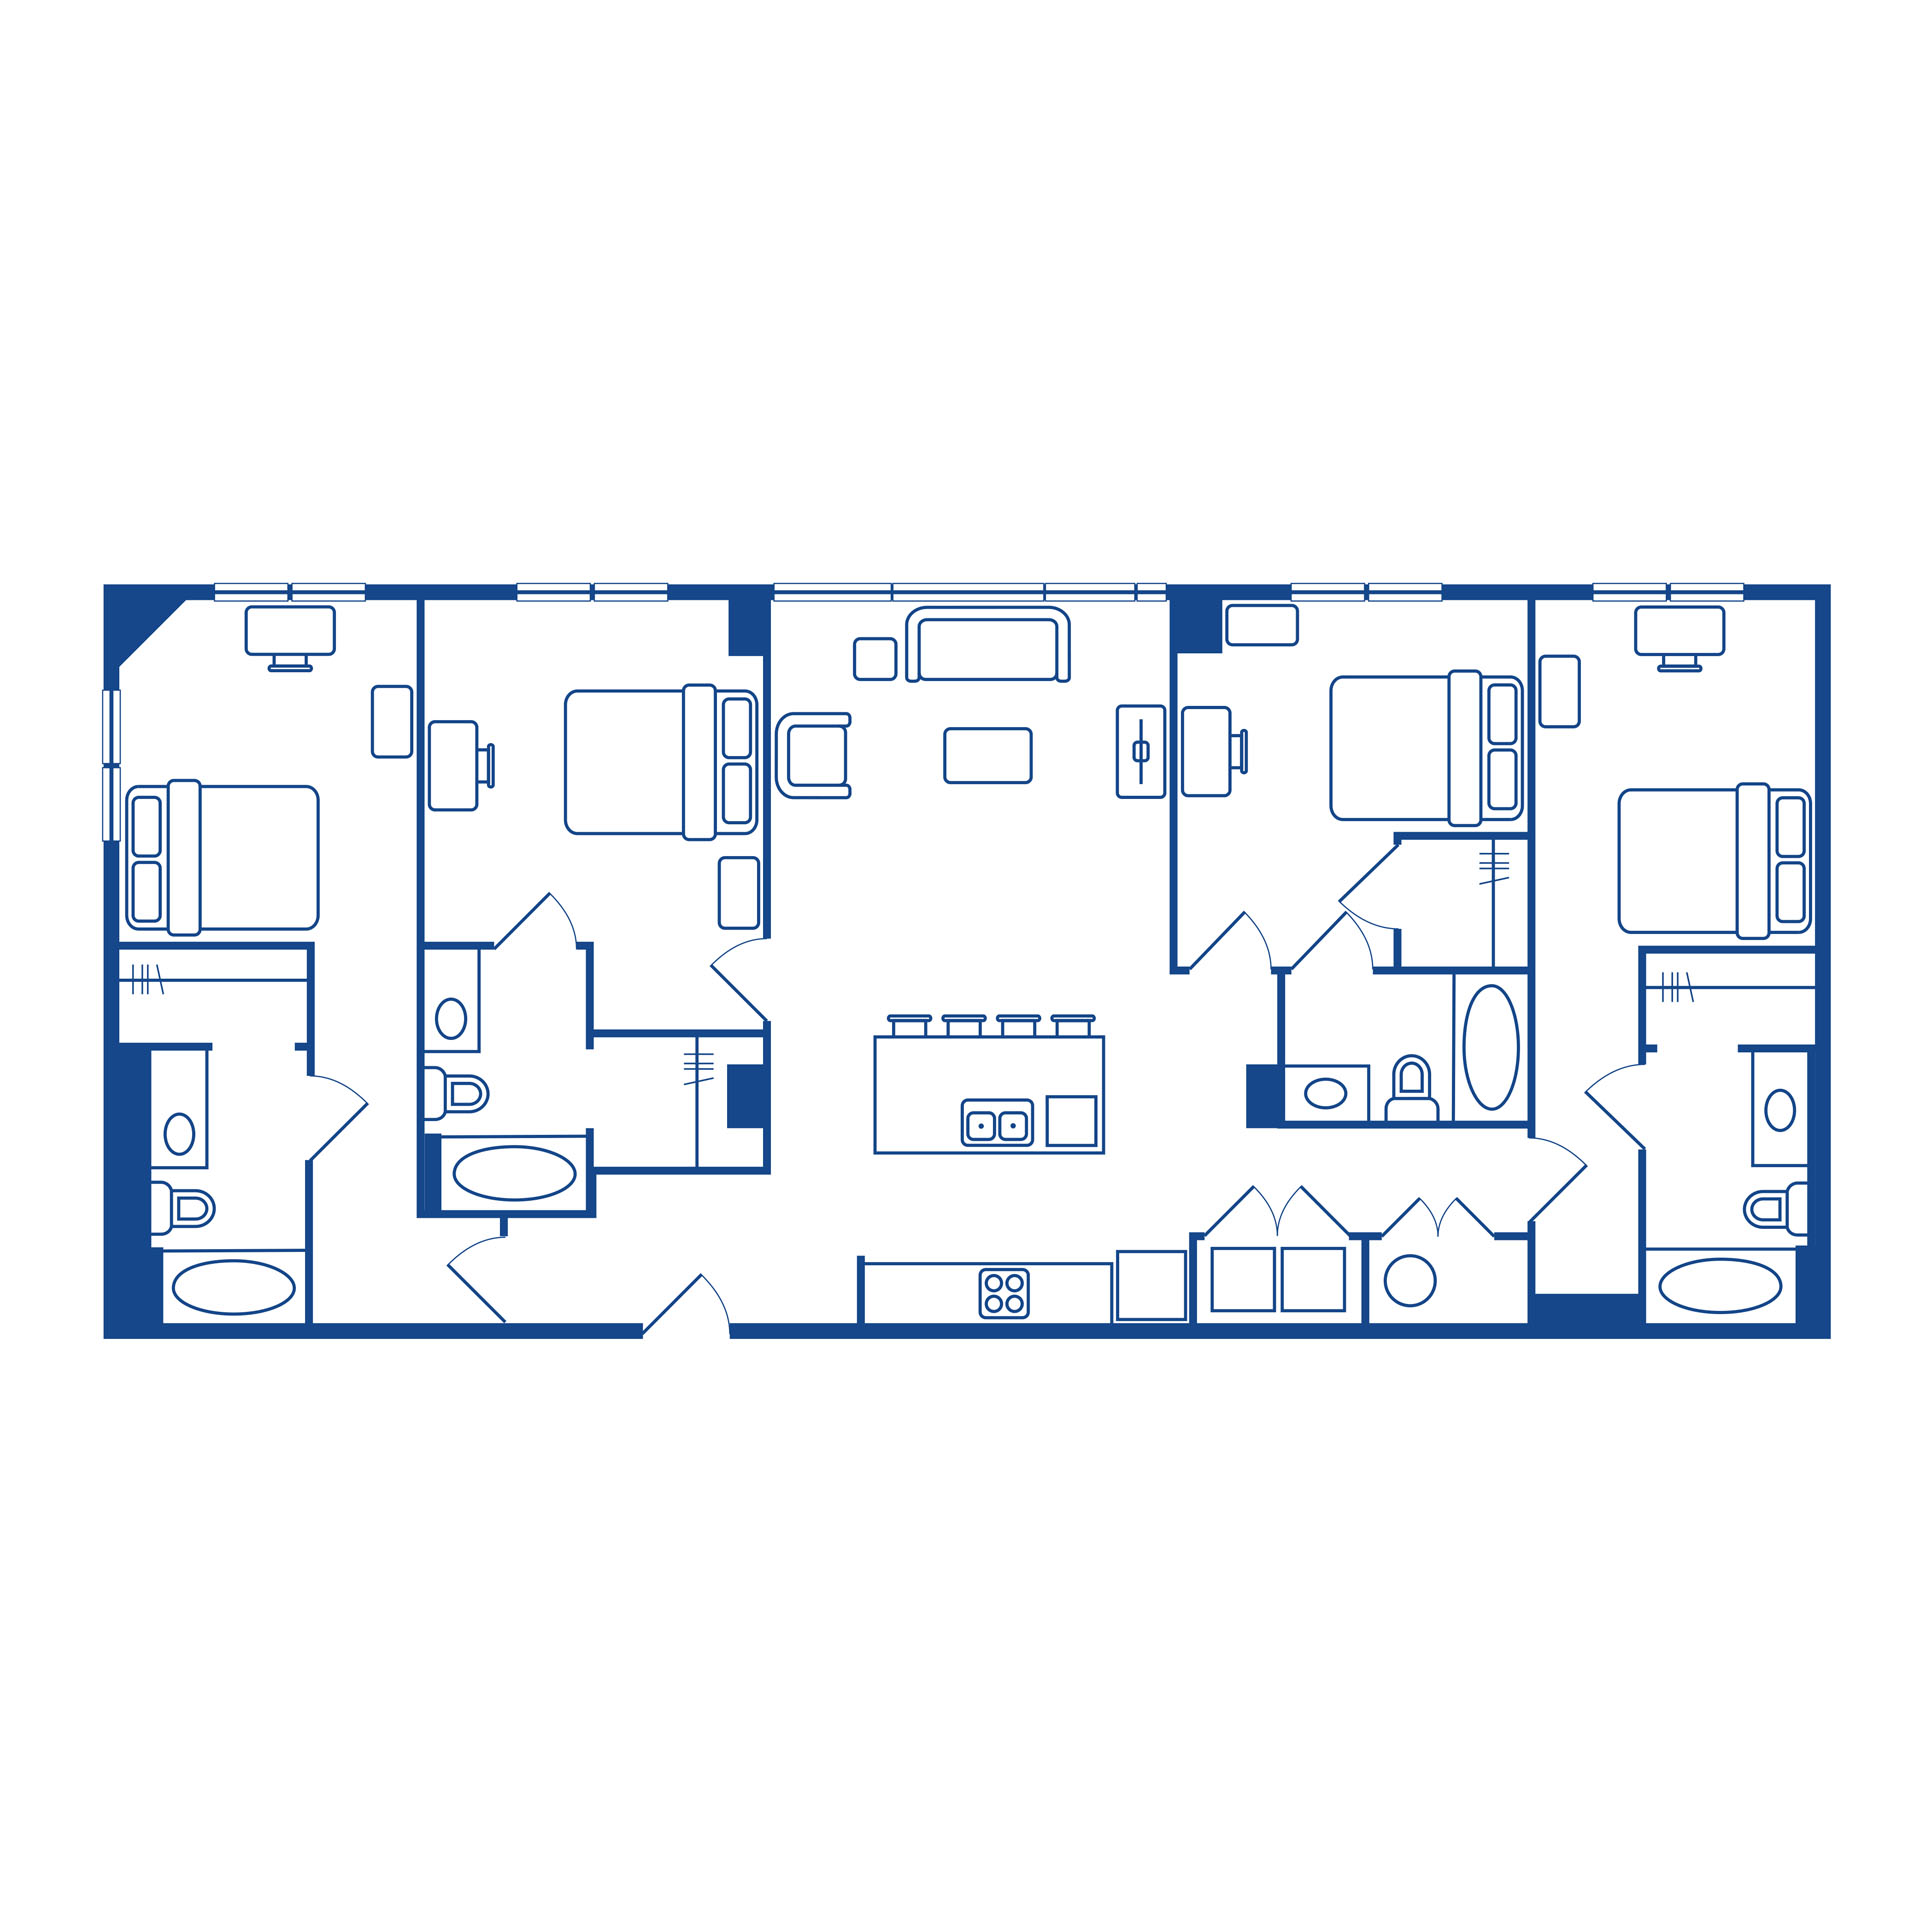 4 bedroom / 4 bath tower floor plan